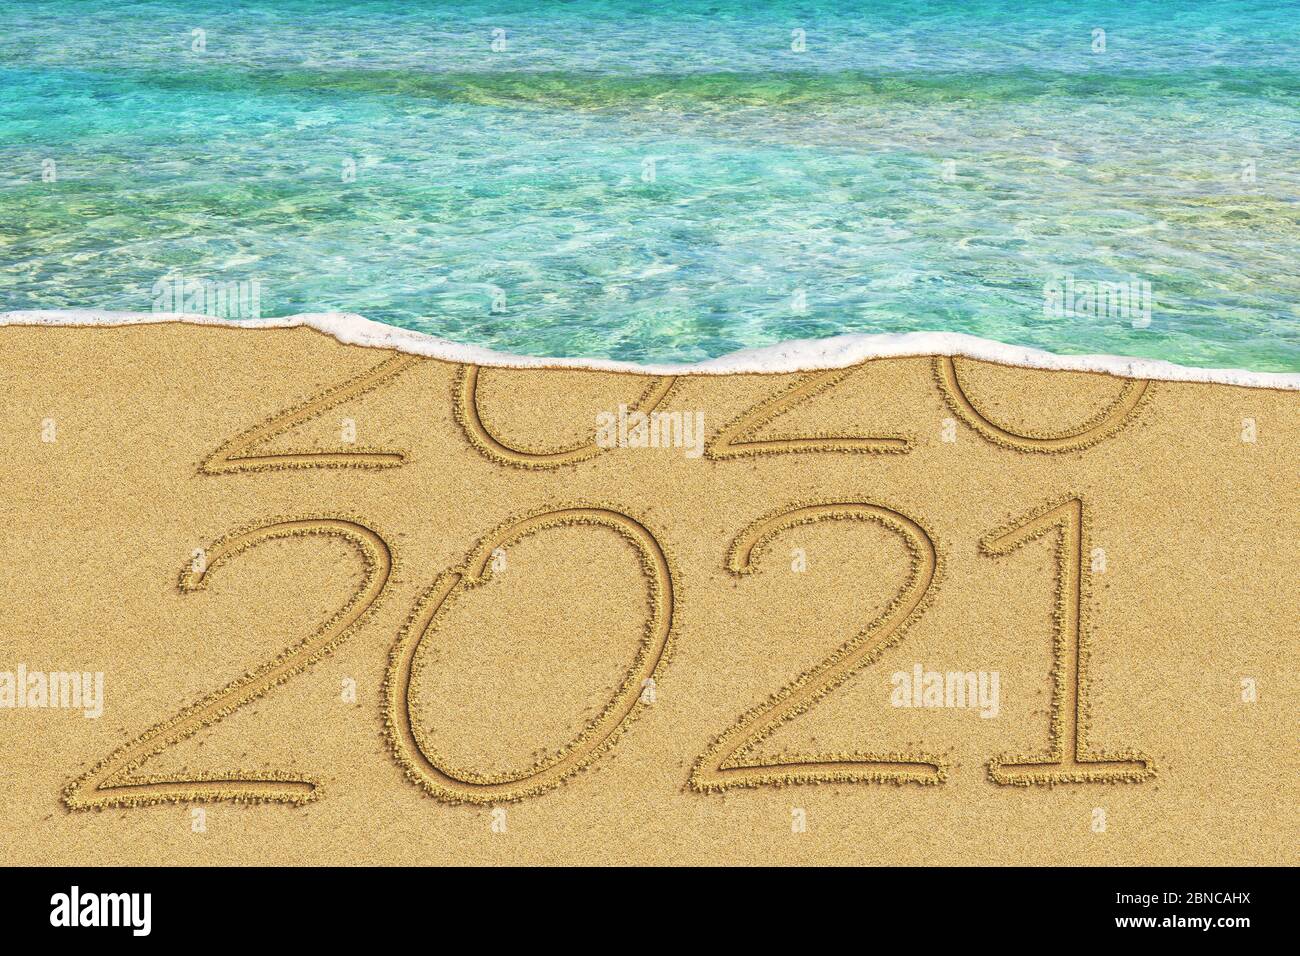 Bonne année 2021 et l'année de départ de 2020 concept texte sur la plage de la mer Banque D'Images